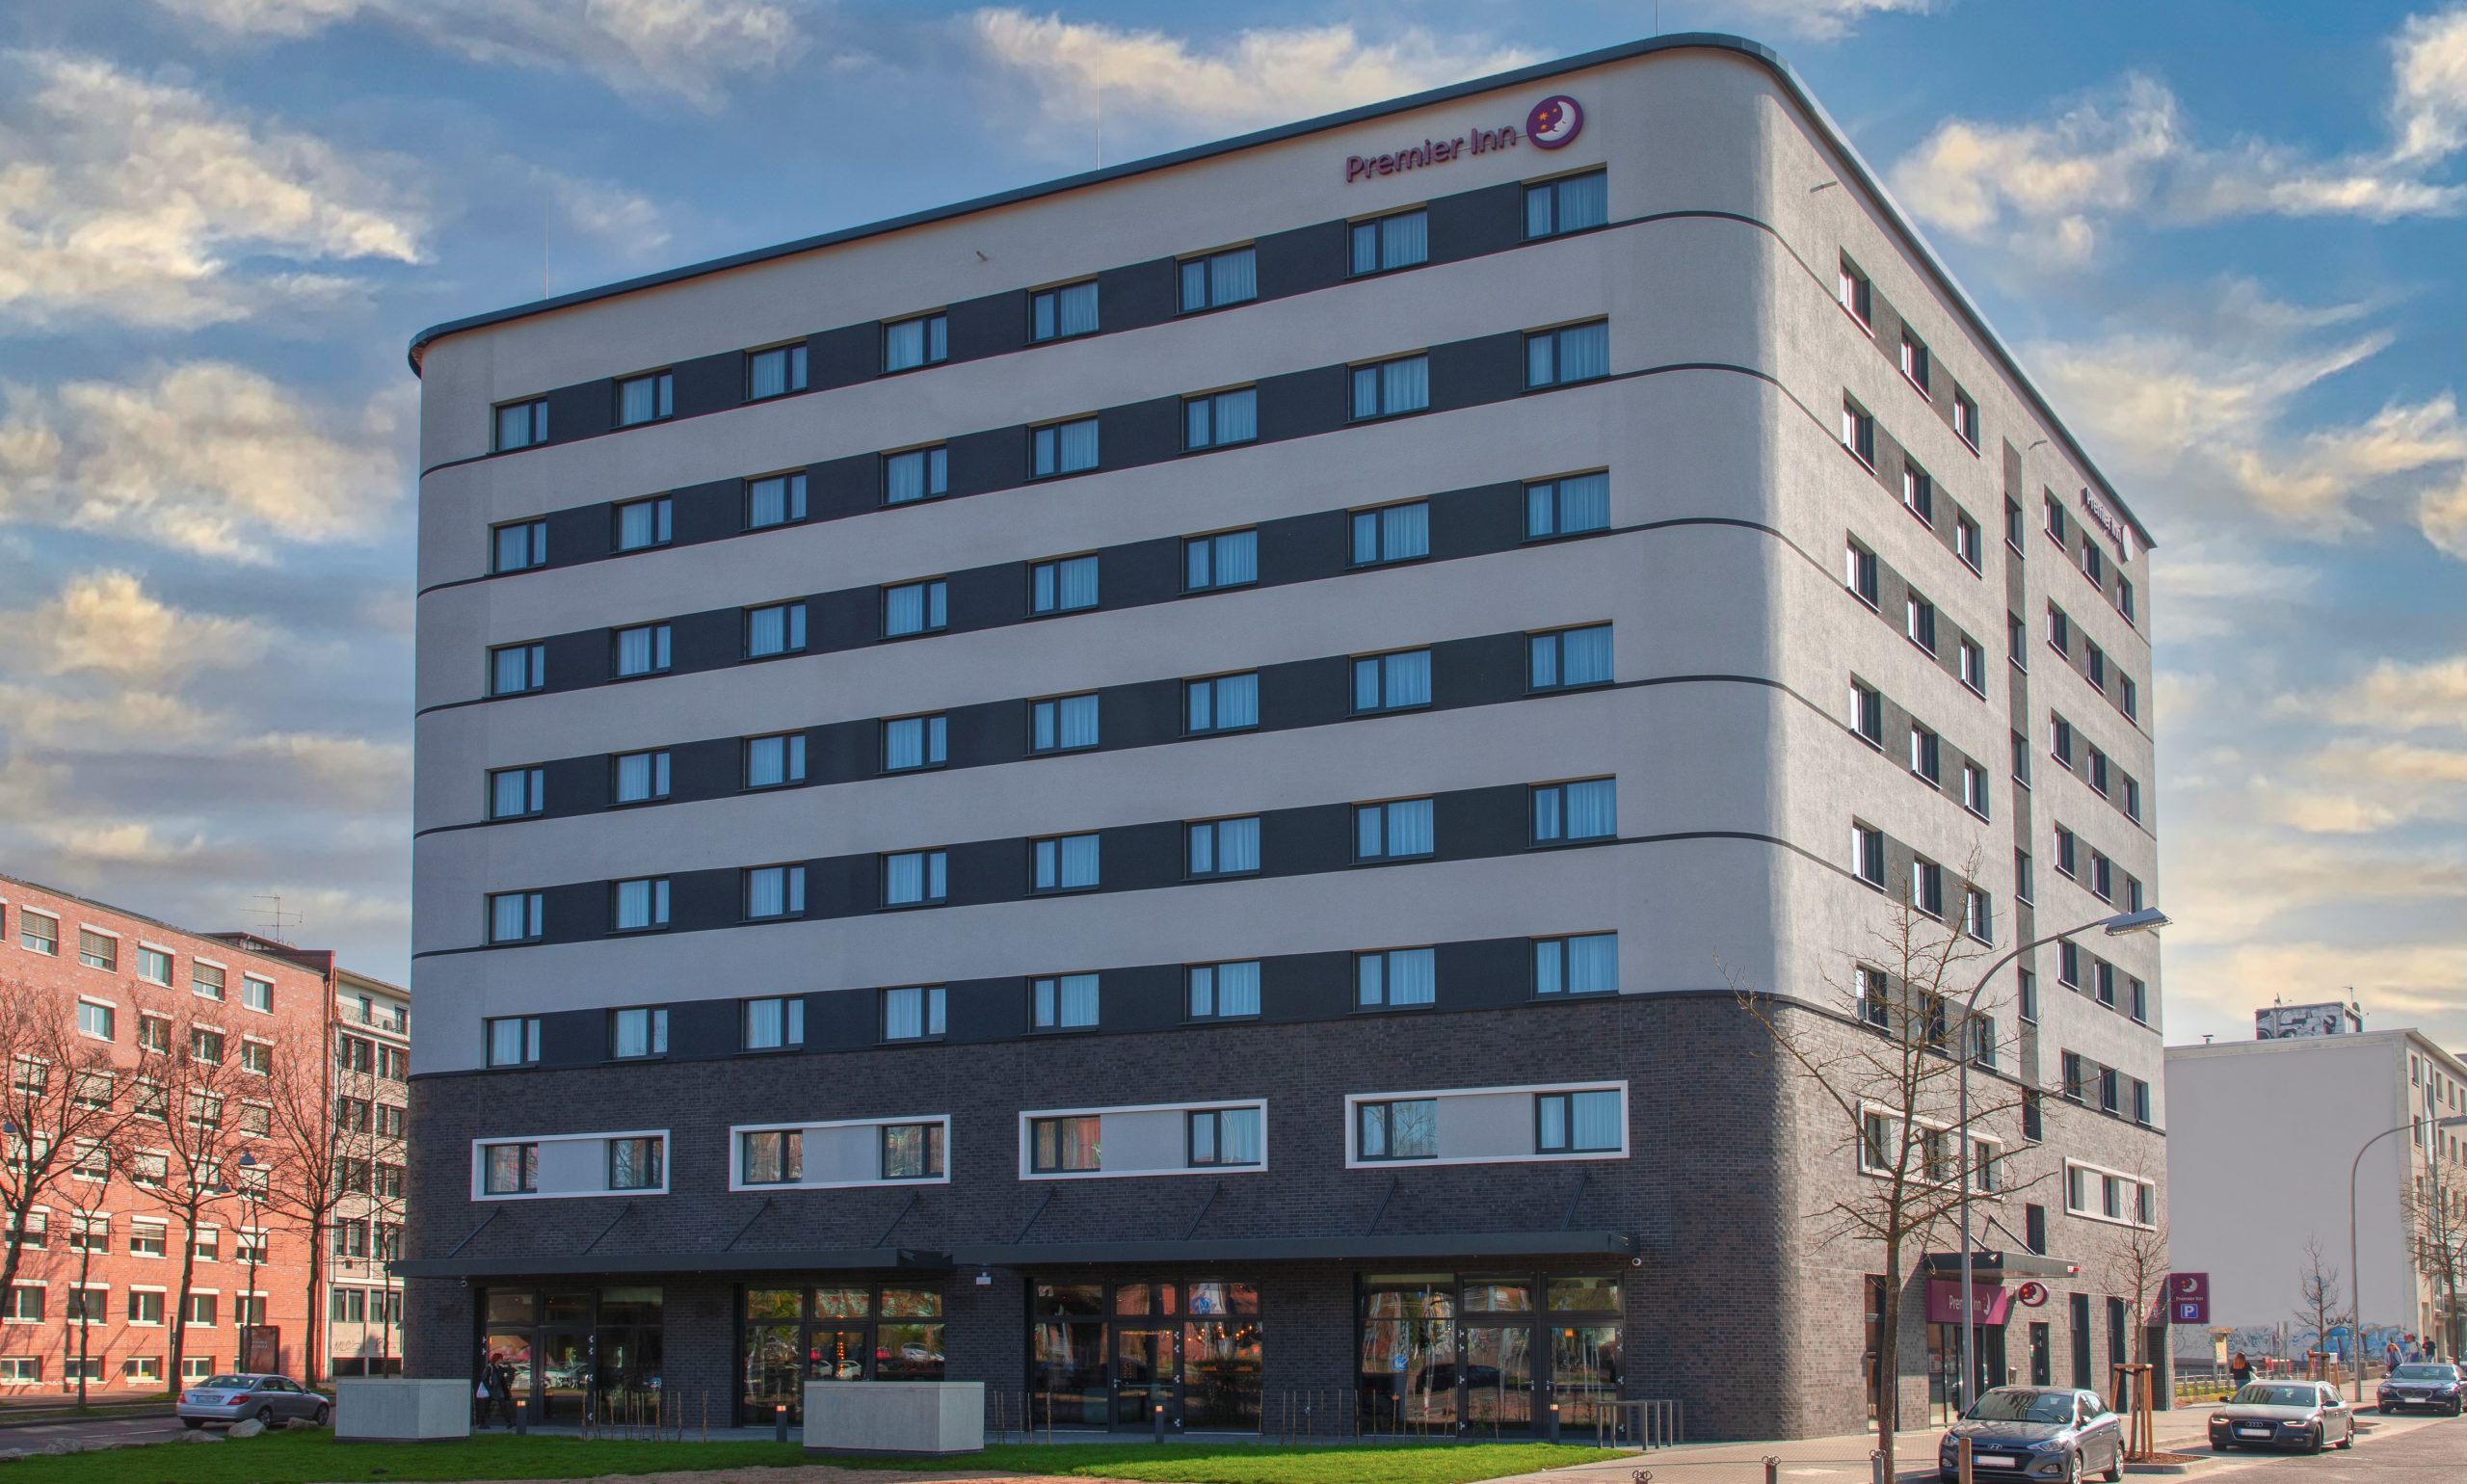 Premier Inn eröffnet mit neuem Hotel an der Congresshalle zweiten Standort in Saarbrücken